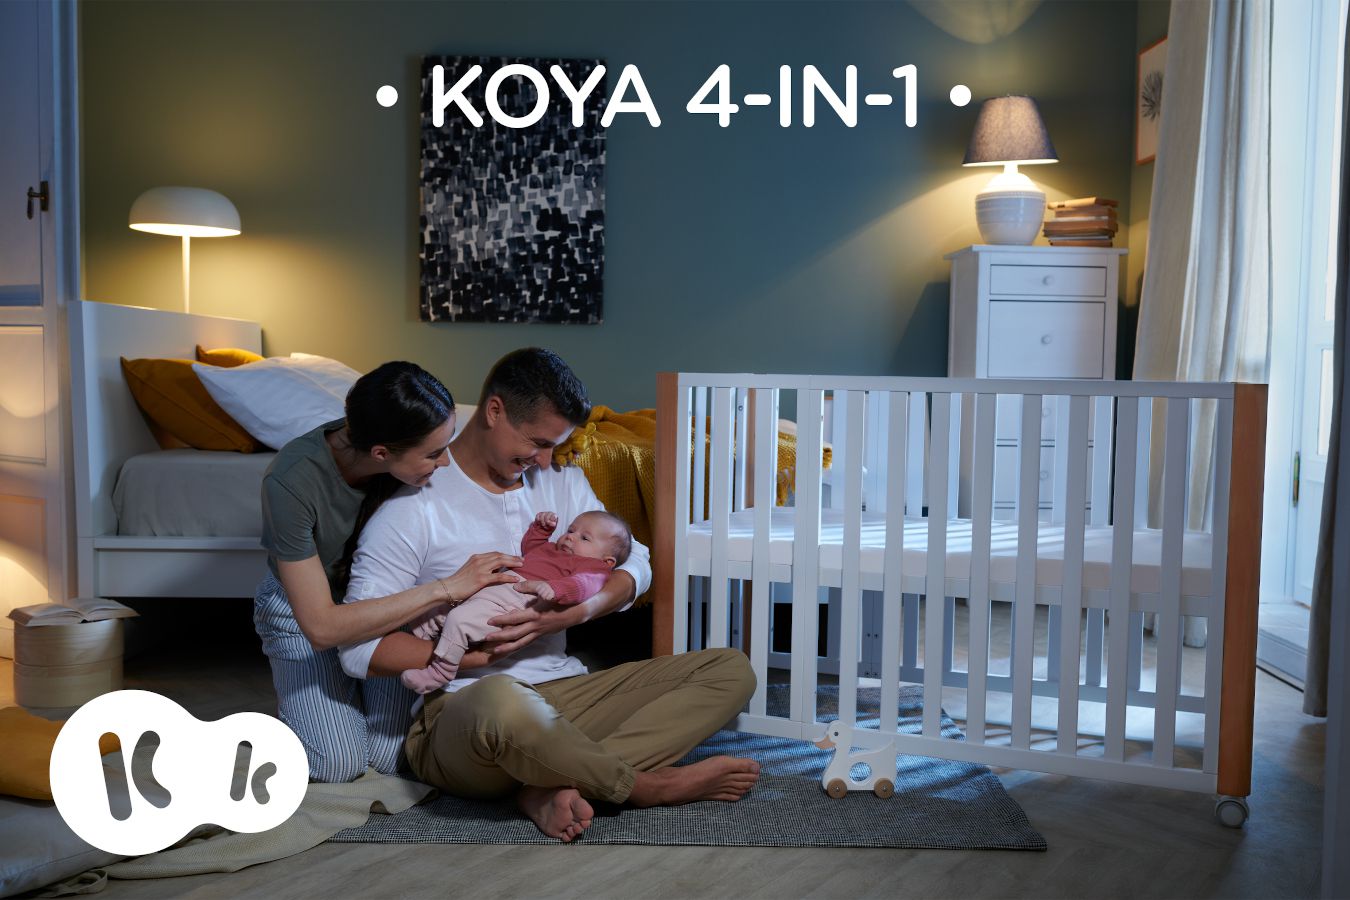 En la casa, los padres están sentados junto con un bebé al lado de la cuna KOYA, el nombre pone KOYA 4IN1.